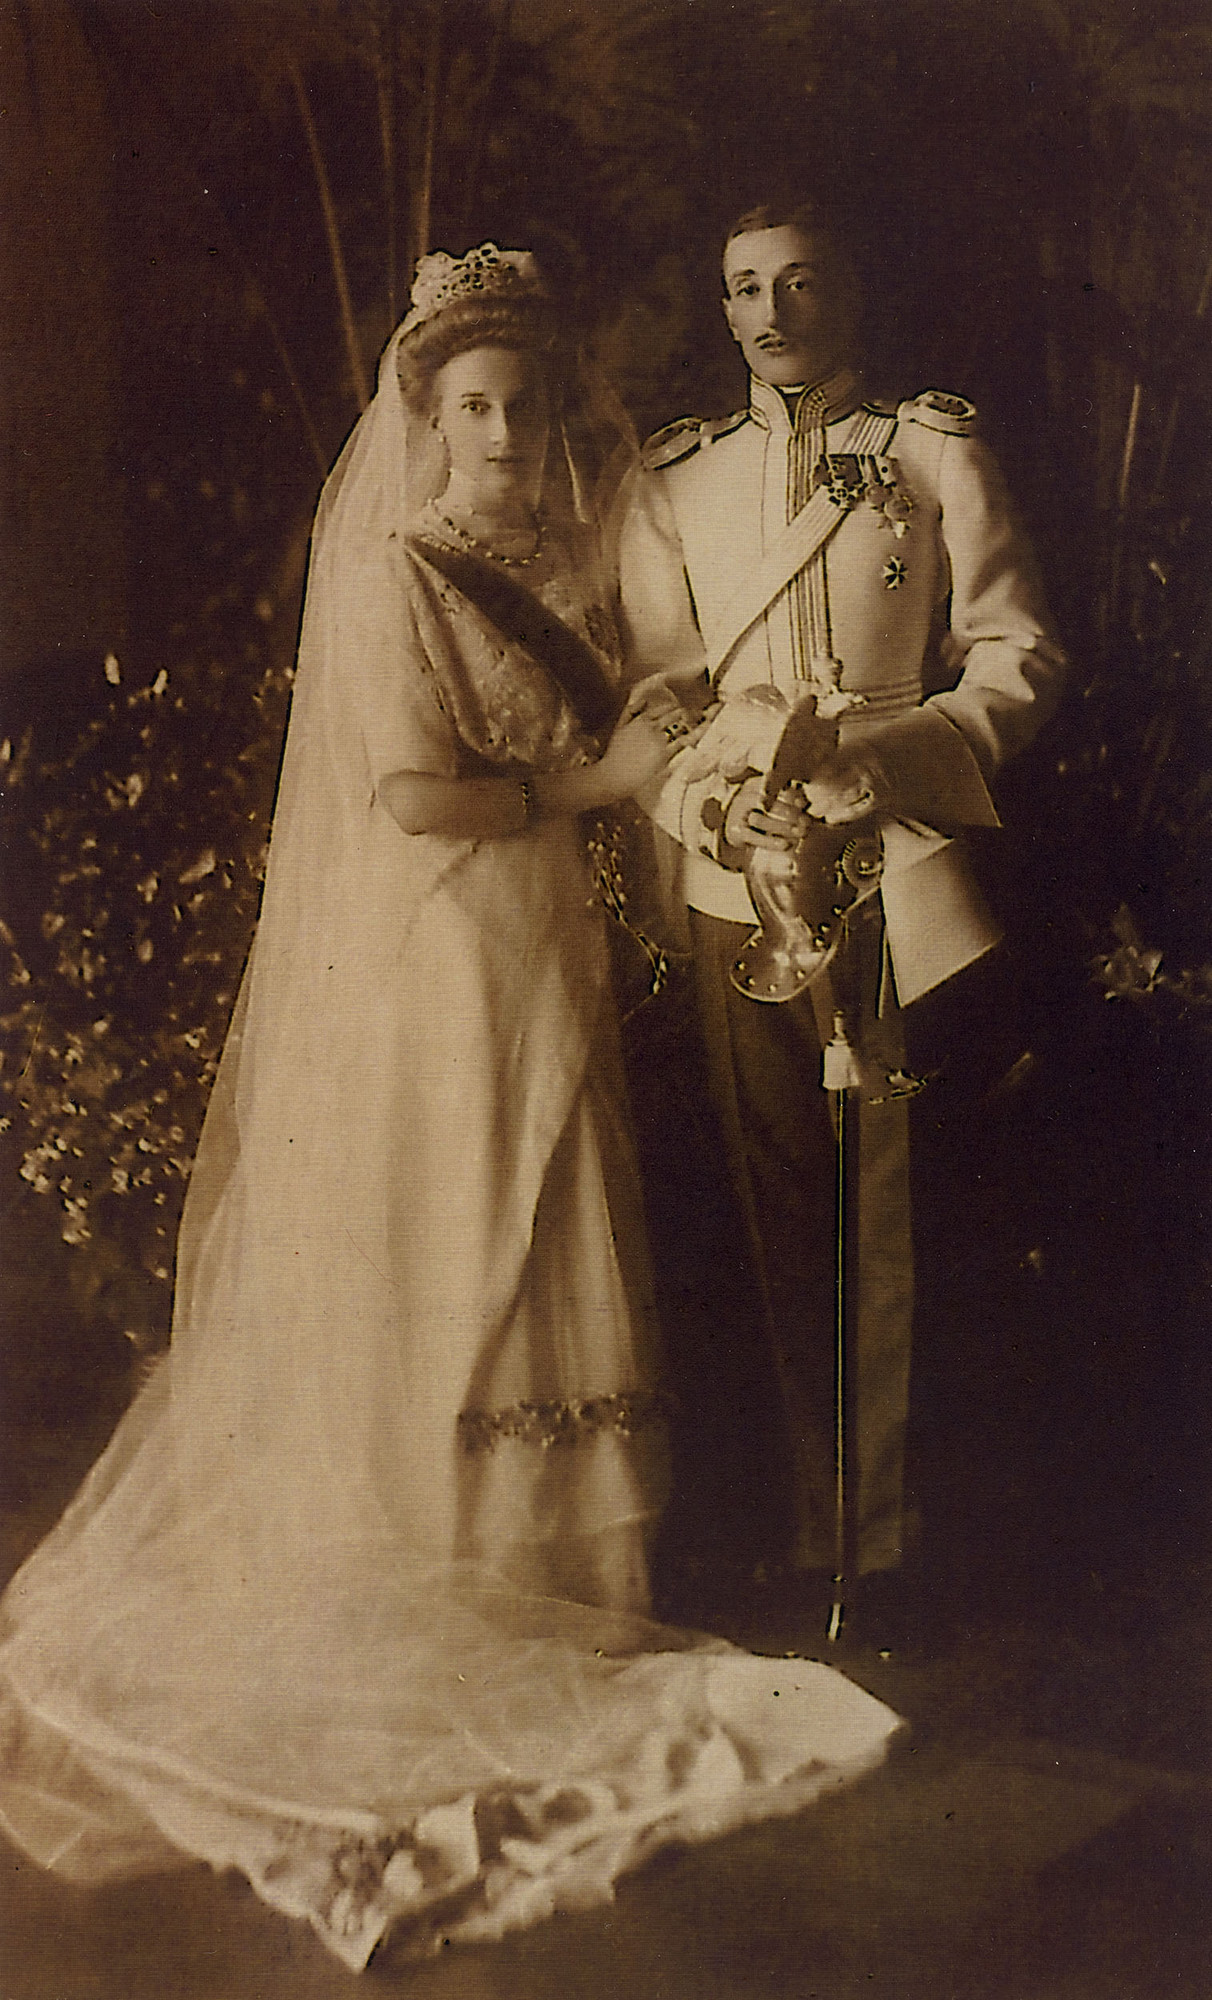 Una foto de la boda del príncipe georgiano Konstantino Bagration de Mukhrani y la princesa Tatiana Constantinovna